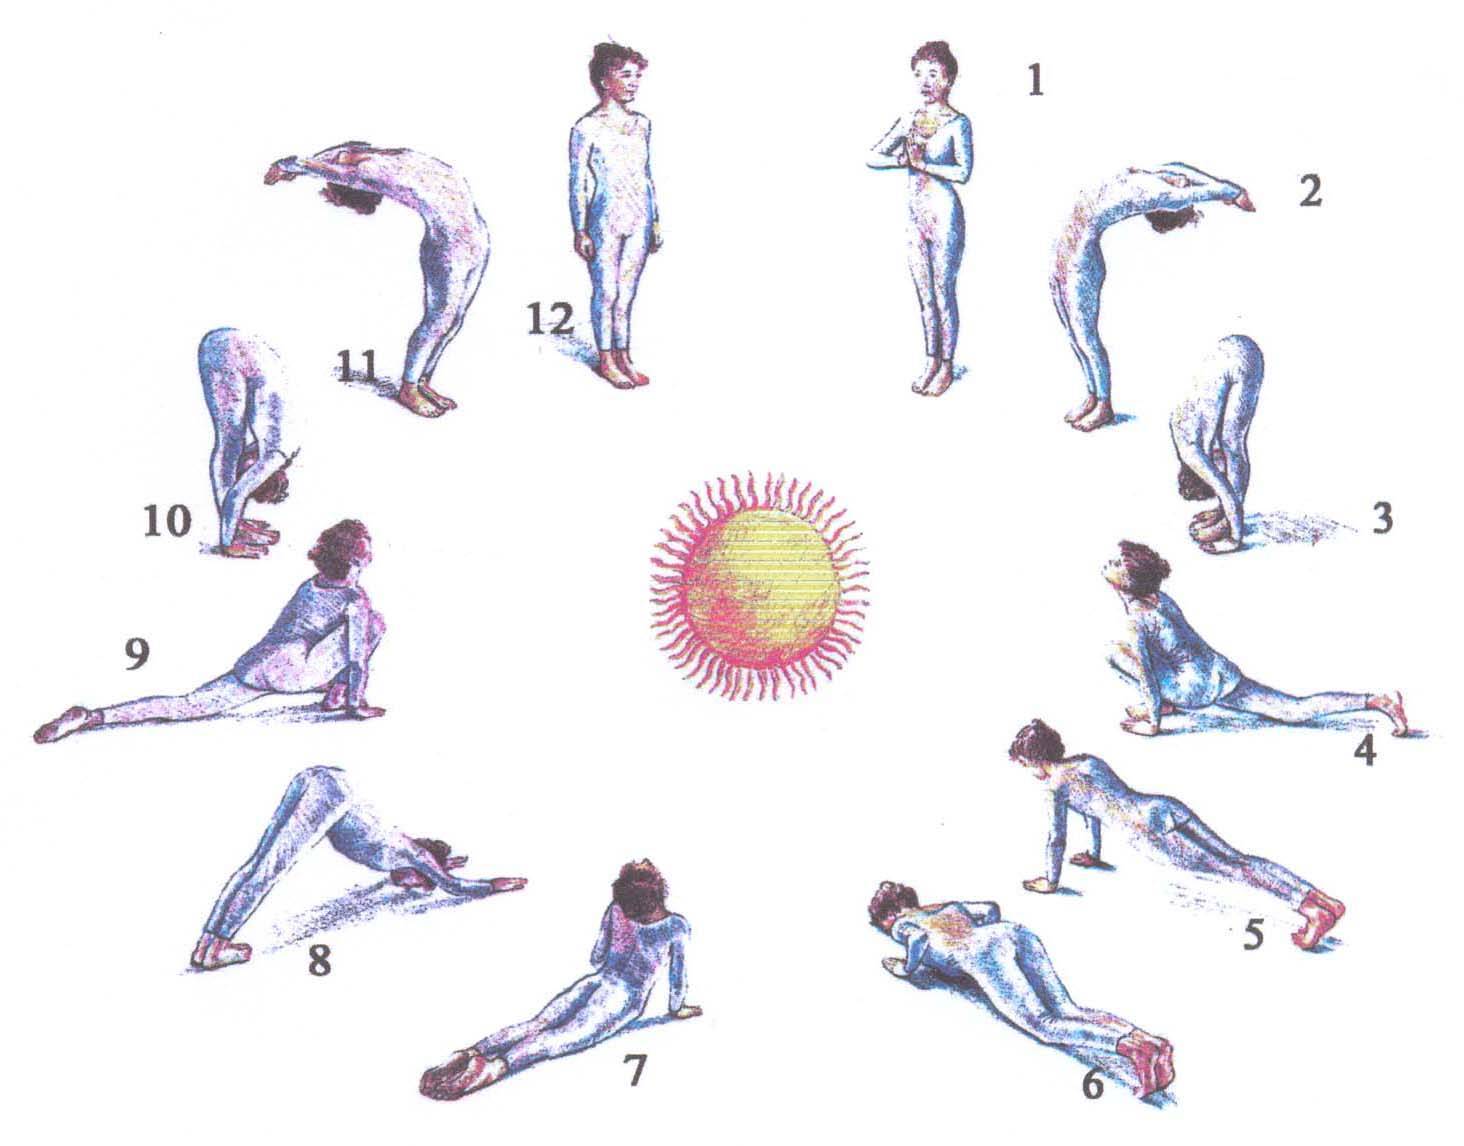 Утренняя йога: утренний комплекс для начинающих, польза и противопоказания практики утром